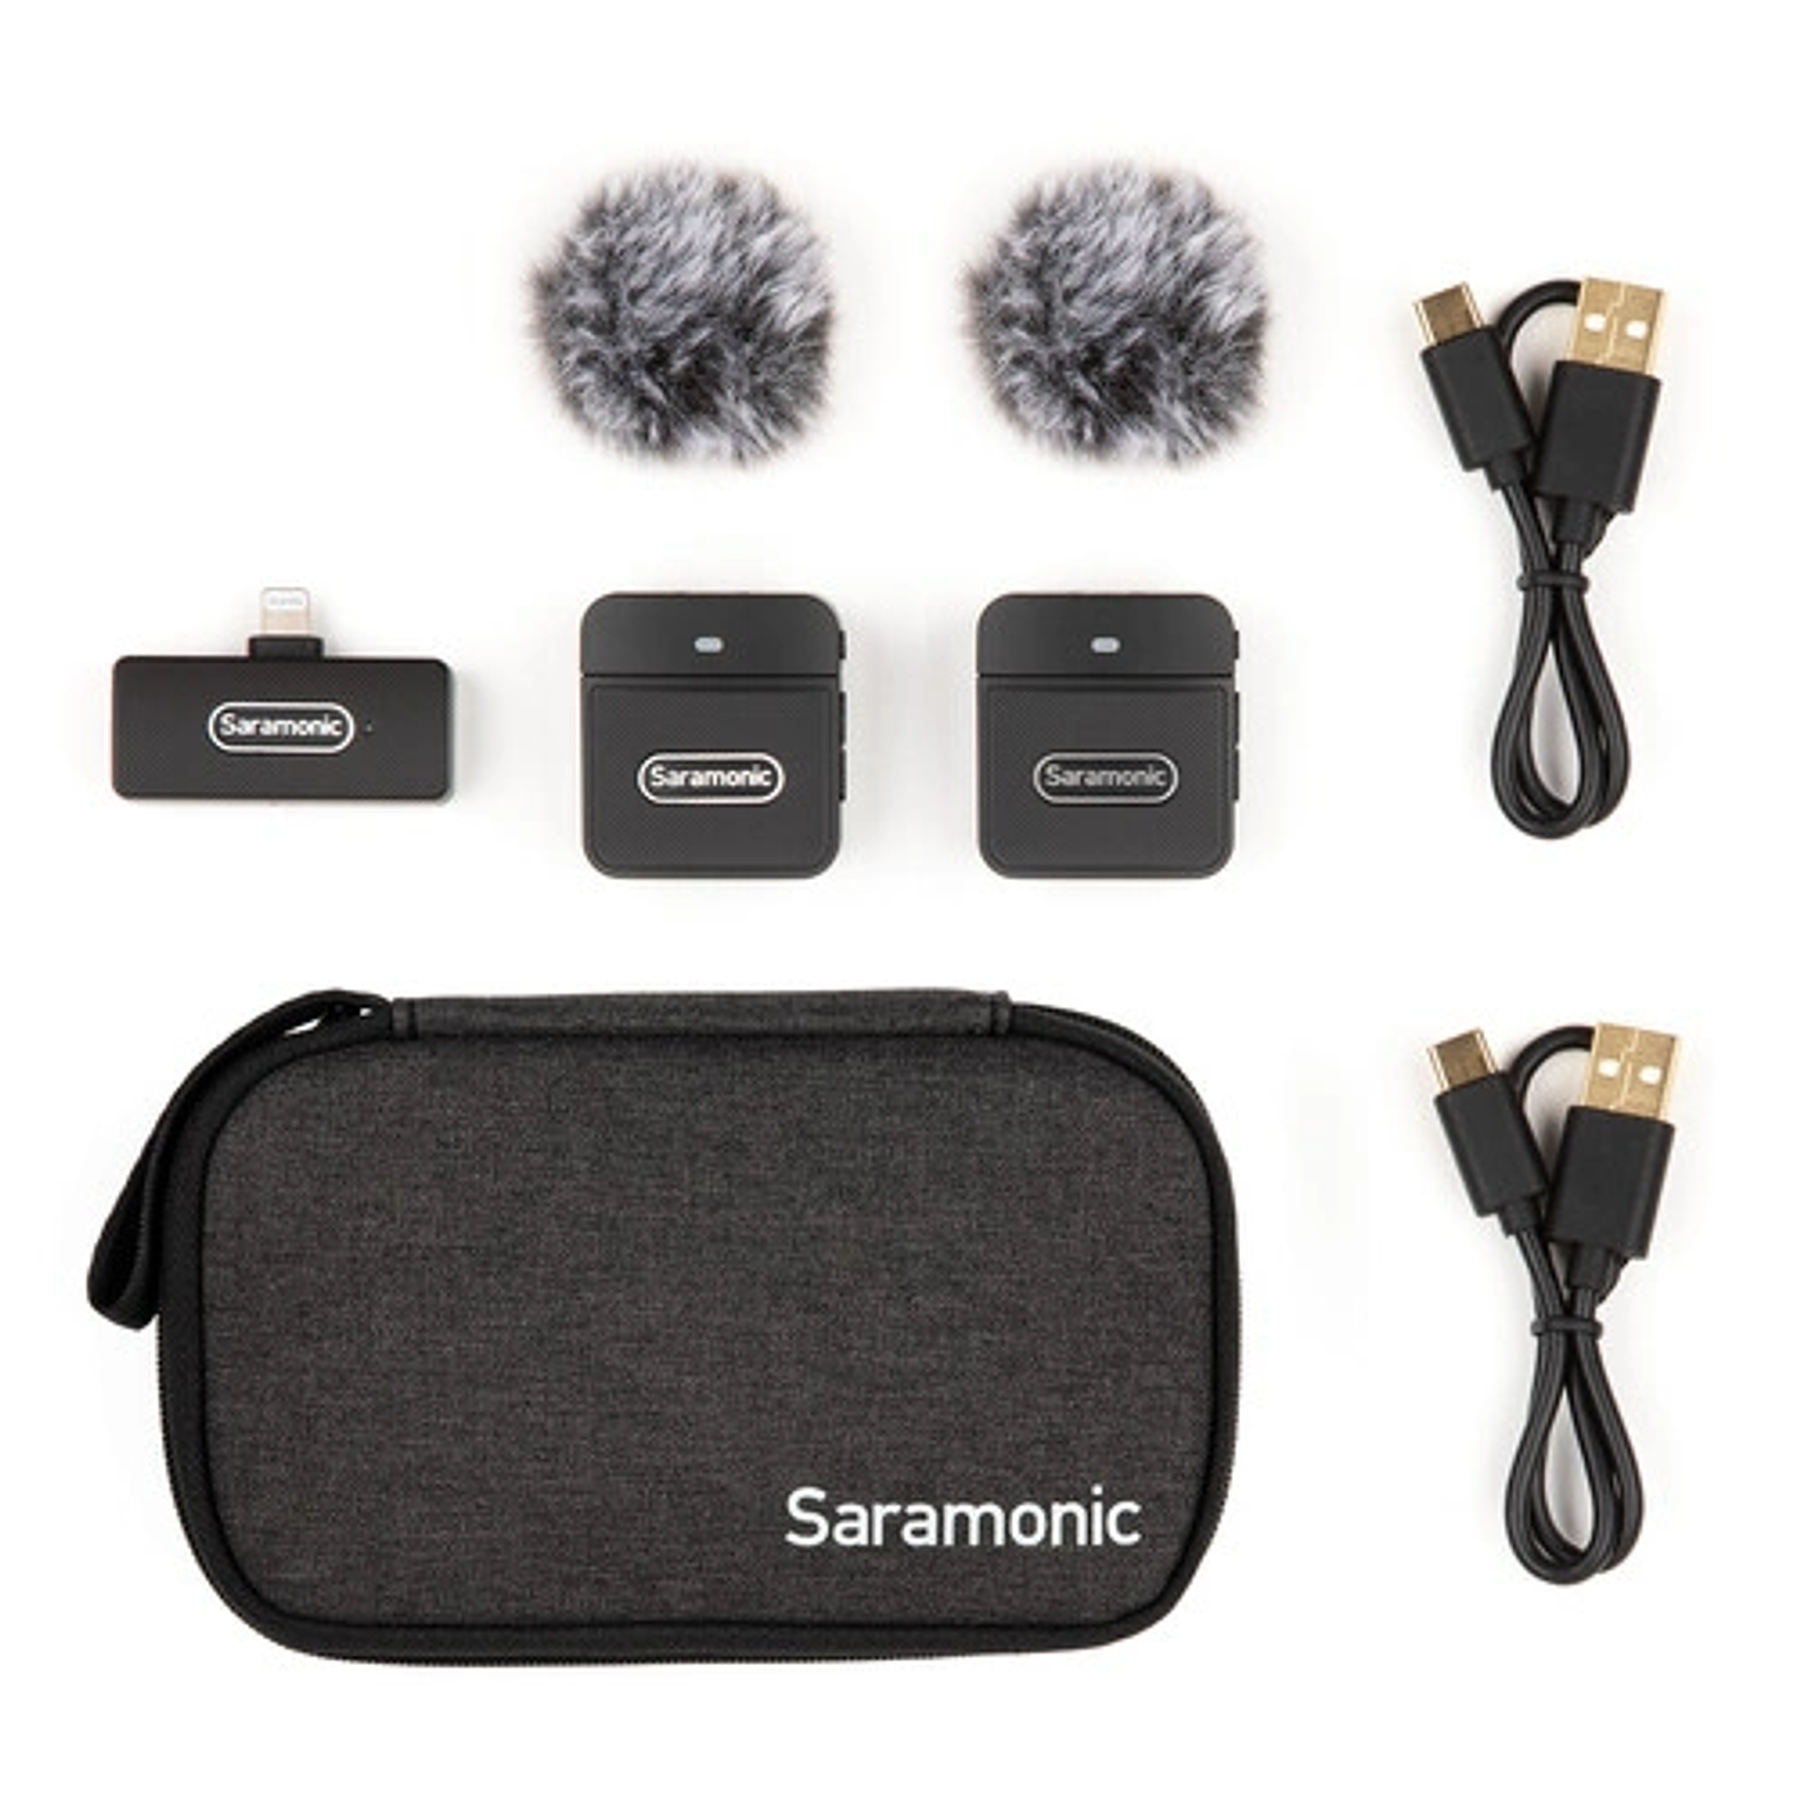 Sistema de micrófono con clip inalámbrico para montaje en cámara digital Saramonic Blink 100